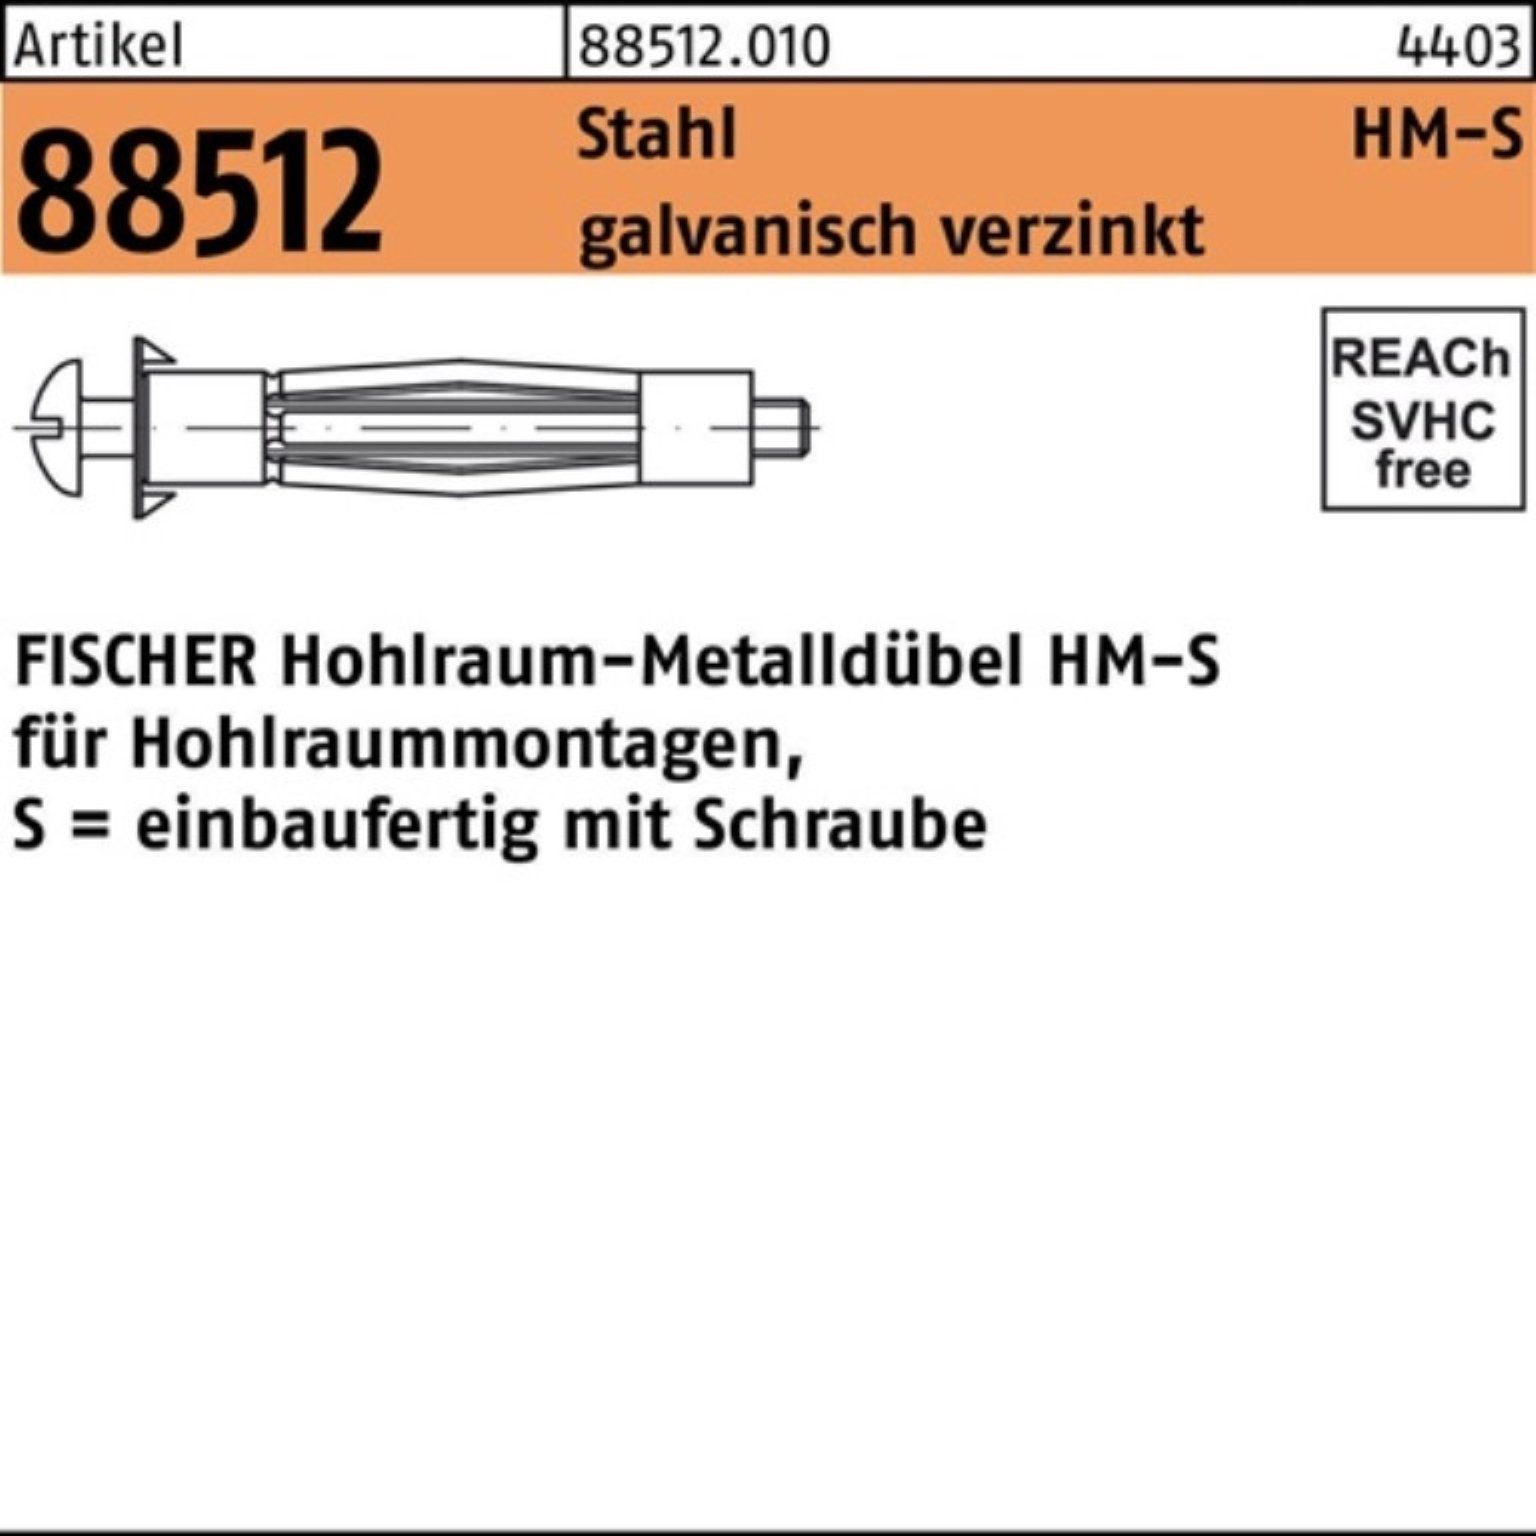 fischer Hohlraumdübel 100er Pack R galv.verz. 50 Stahl Stüc 88512 Hohlraumdübel S 6x HM 52